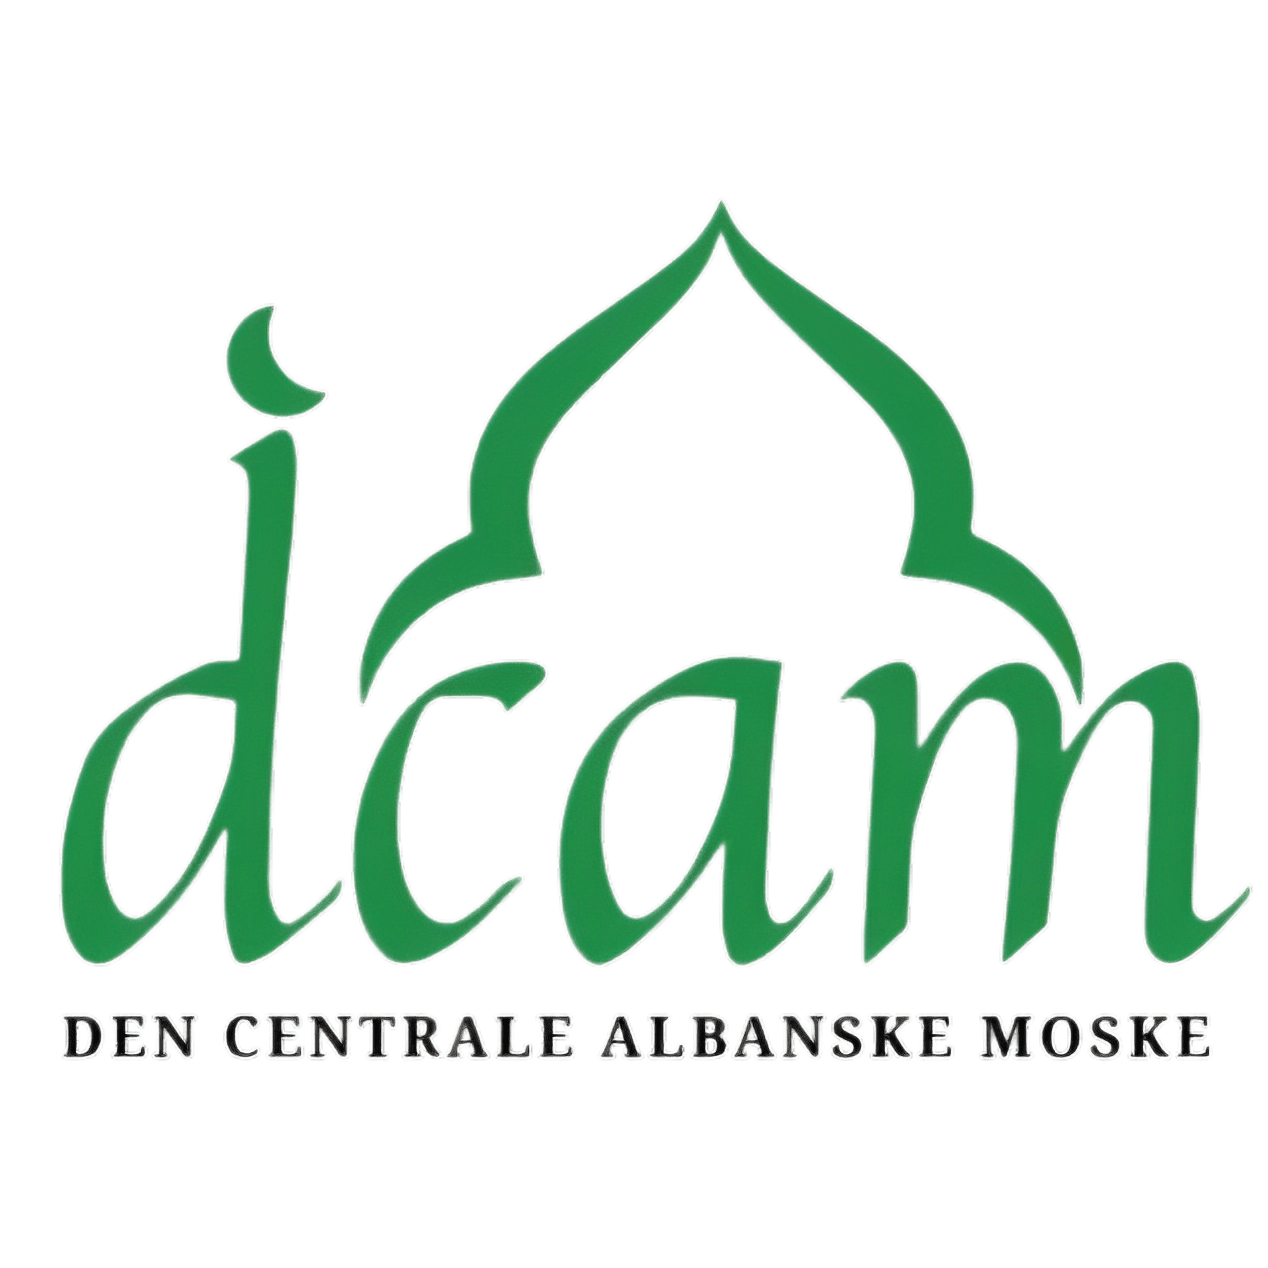 DCAM - Den Centrale Albanske Moske